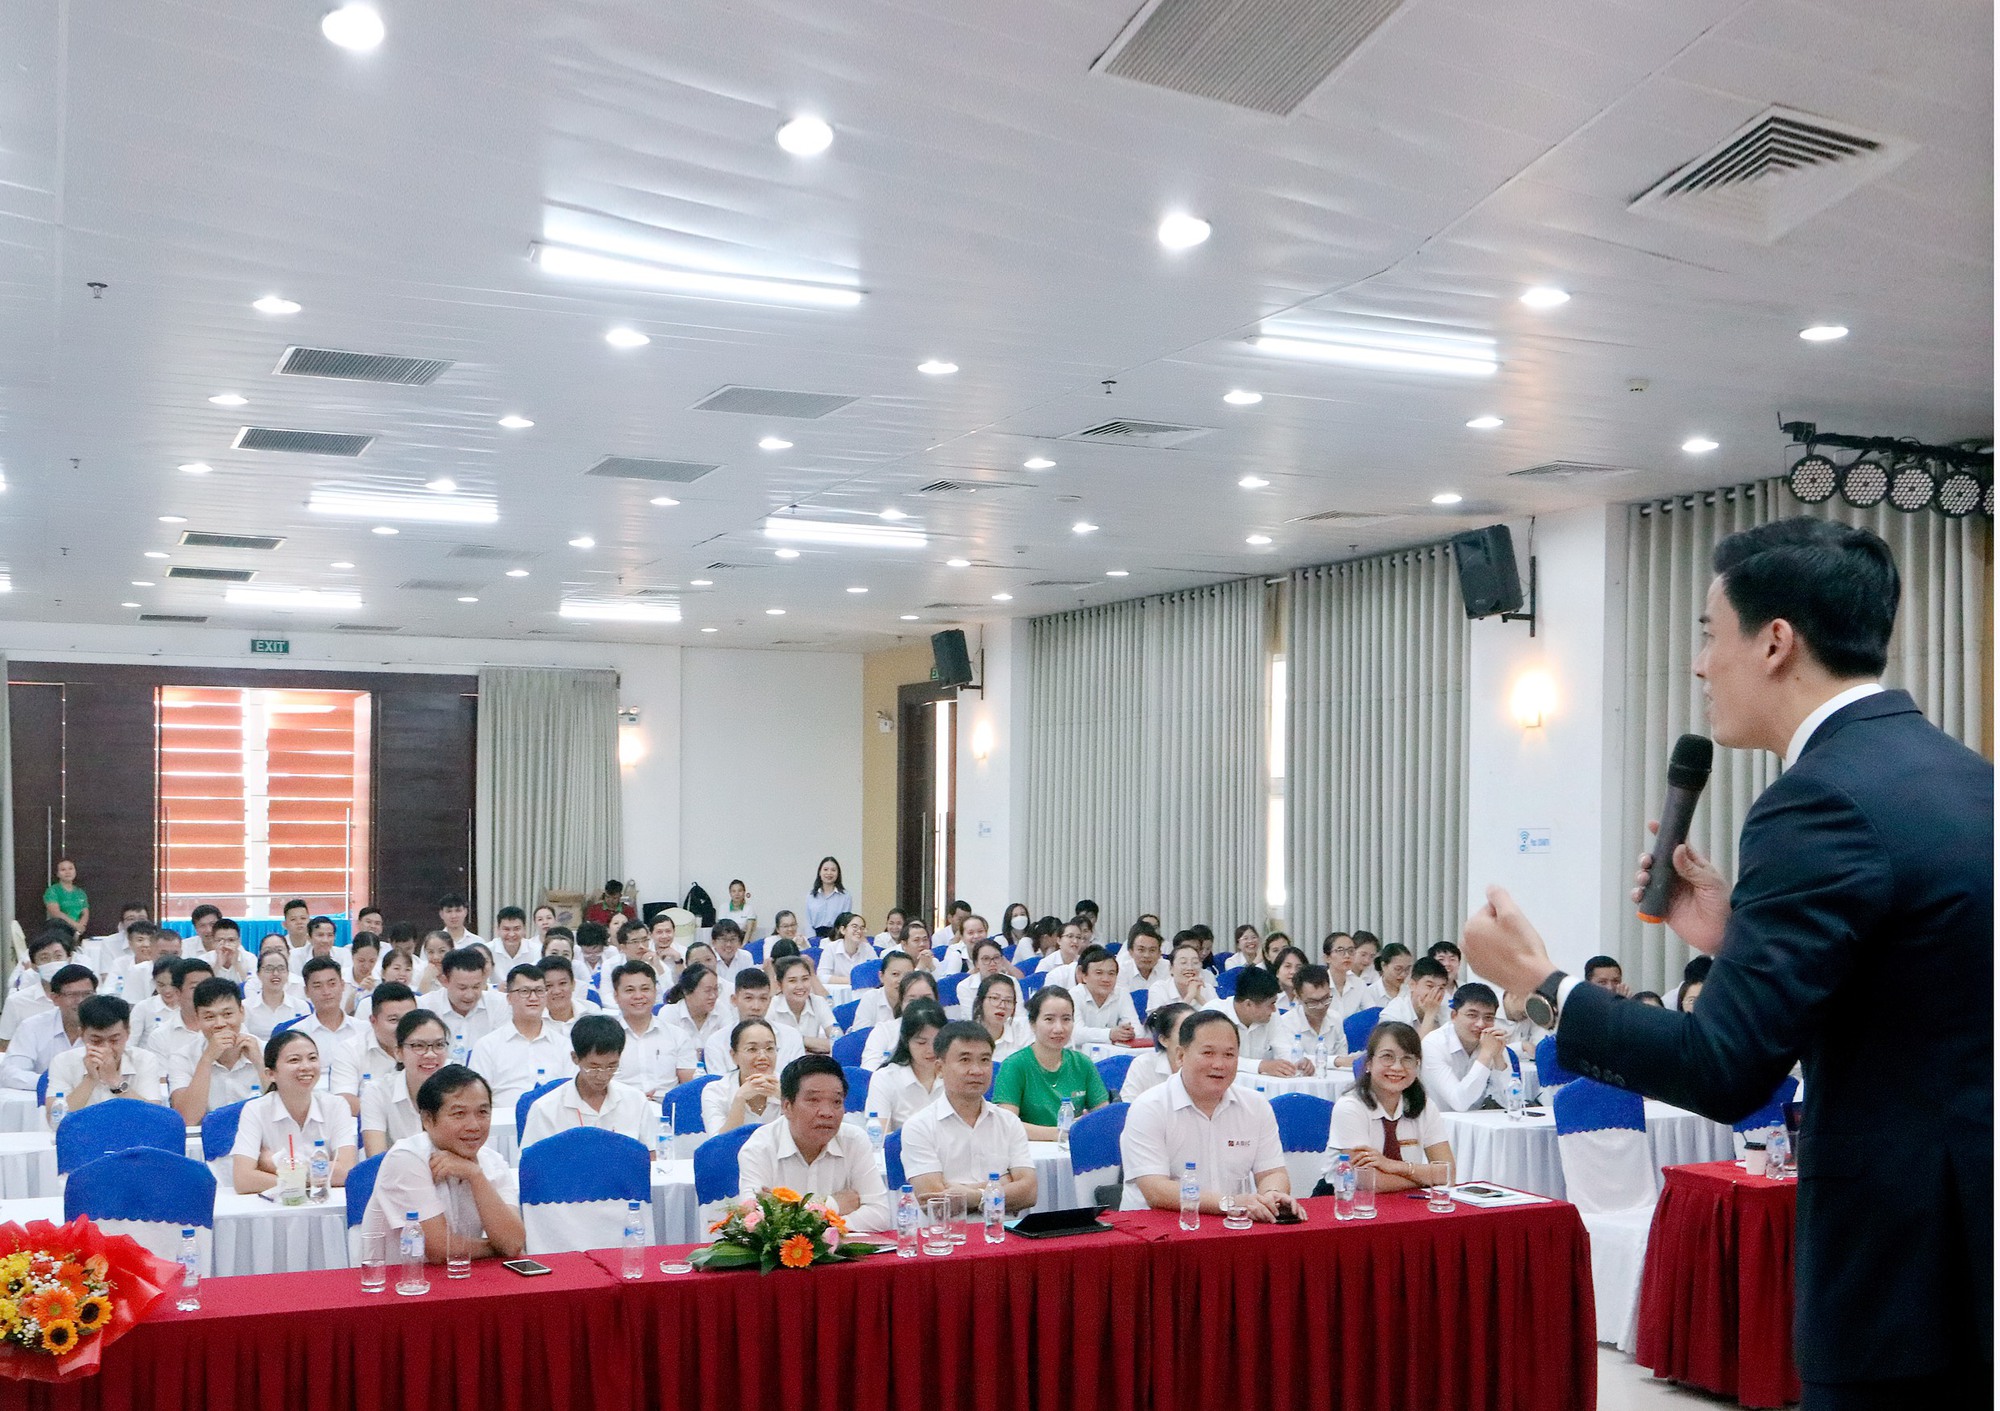 Bảo hiểm Agribank Đà Nẵng tổ chức hội nghị nâng cao kỹ năng, nghiệp vụ chăm sóc khách hàng - Ảnh 4.